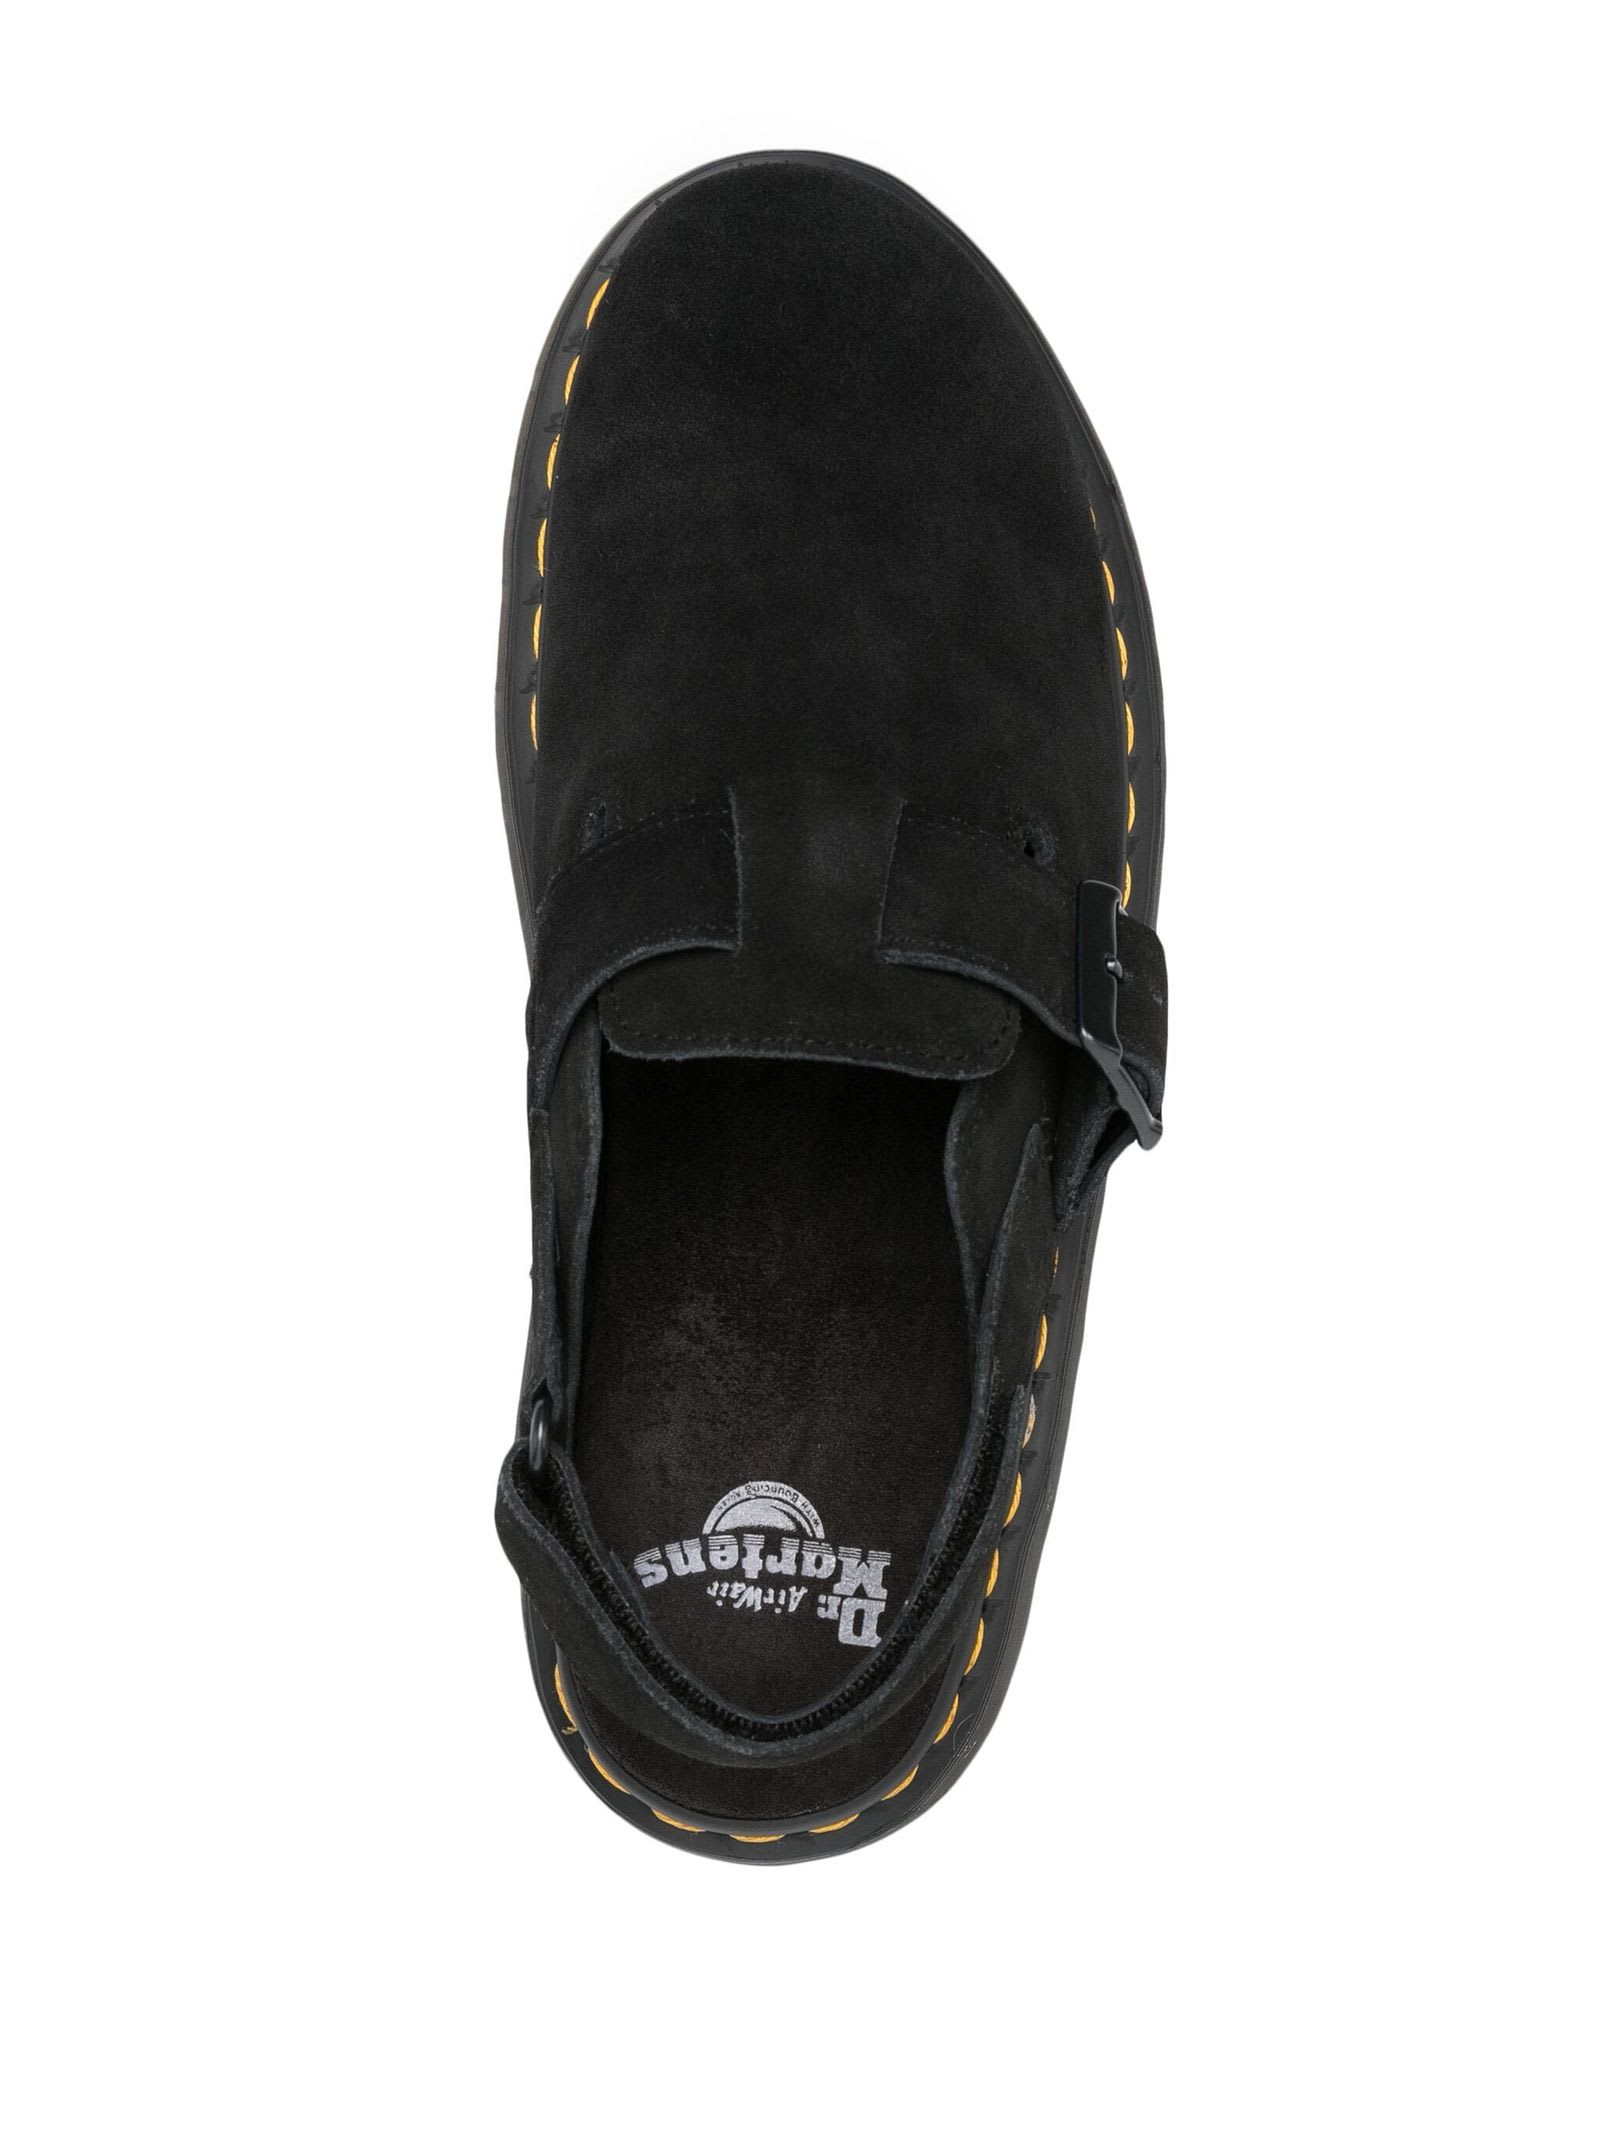 Shop Dr. Martens' Black Jorge Ii Suede Sandals